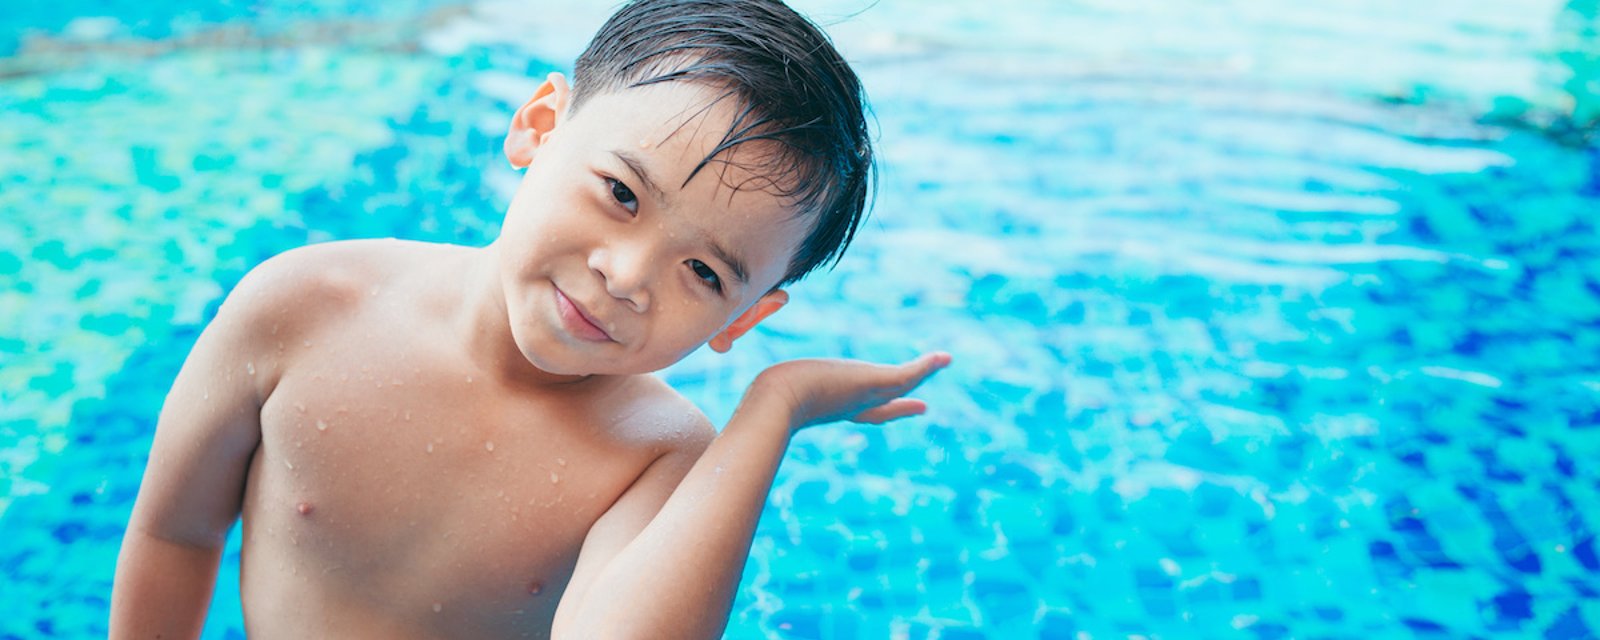 Secouer la tête pour faire sortir de l’eau coincée dans les oreilles peut être très dangereux, surtout pour les enfants